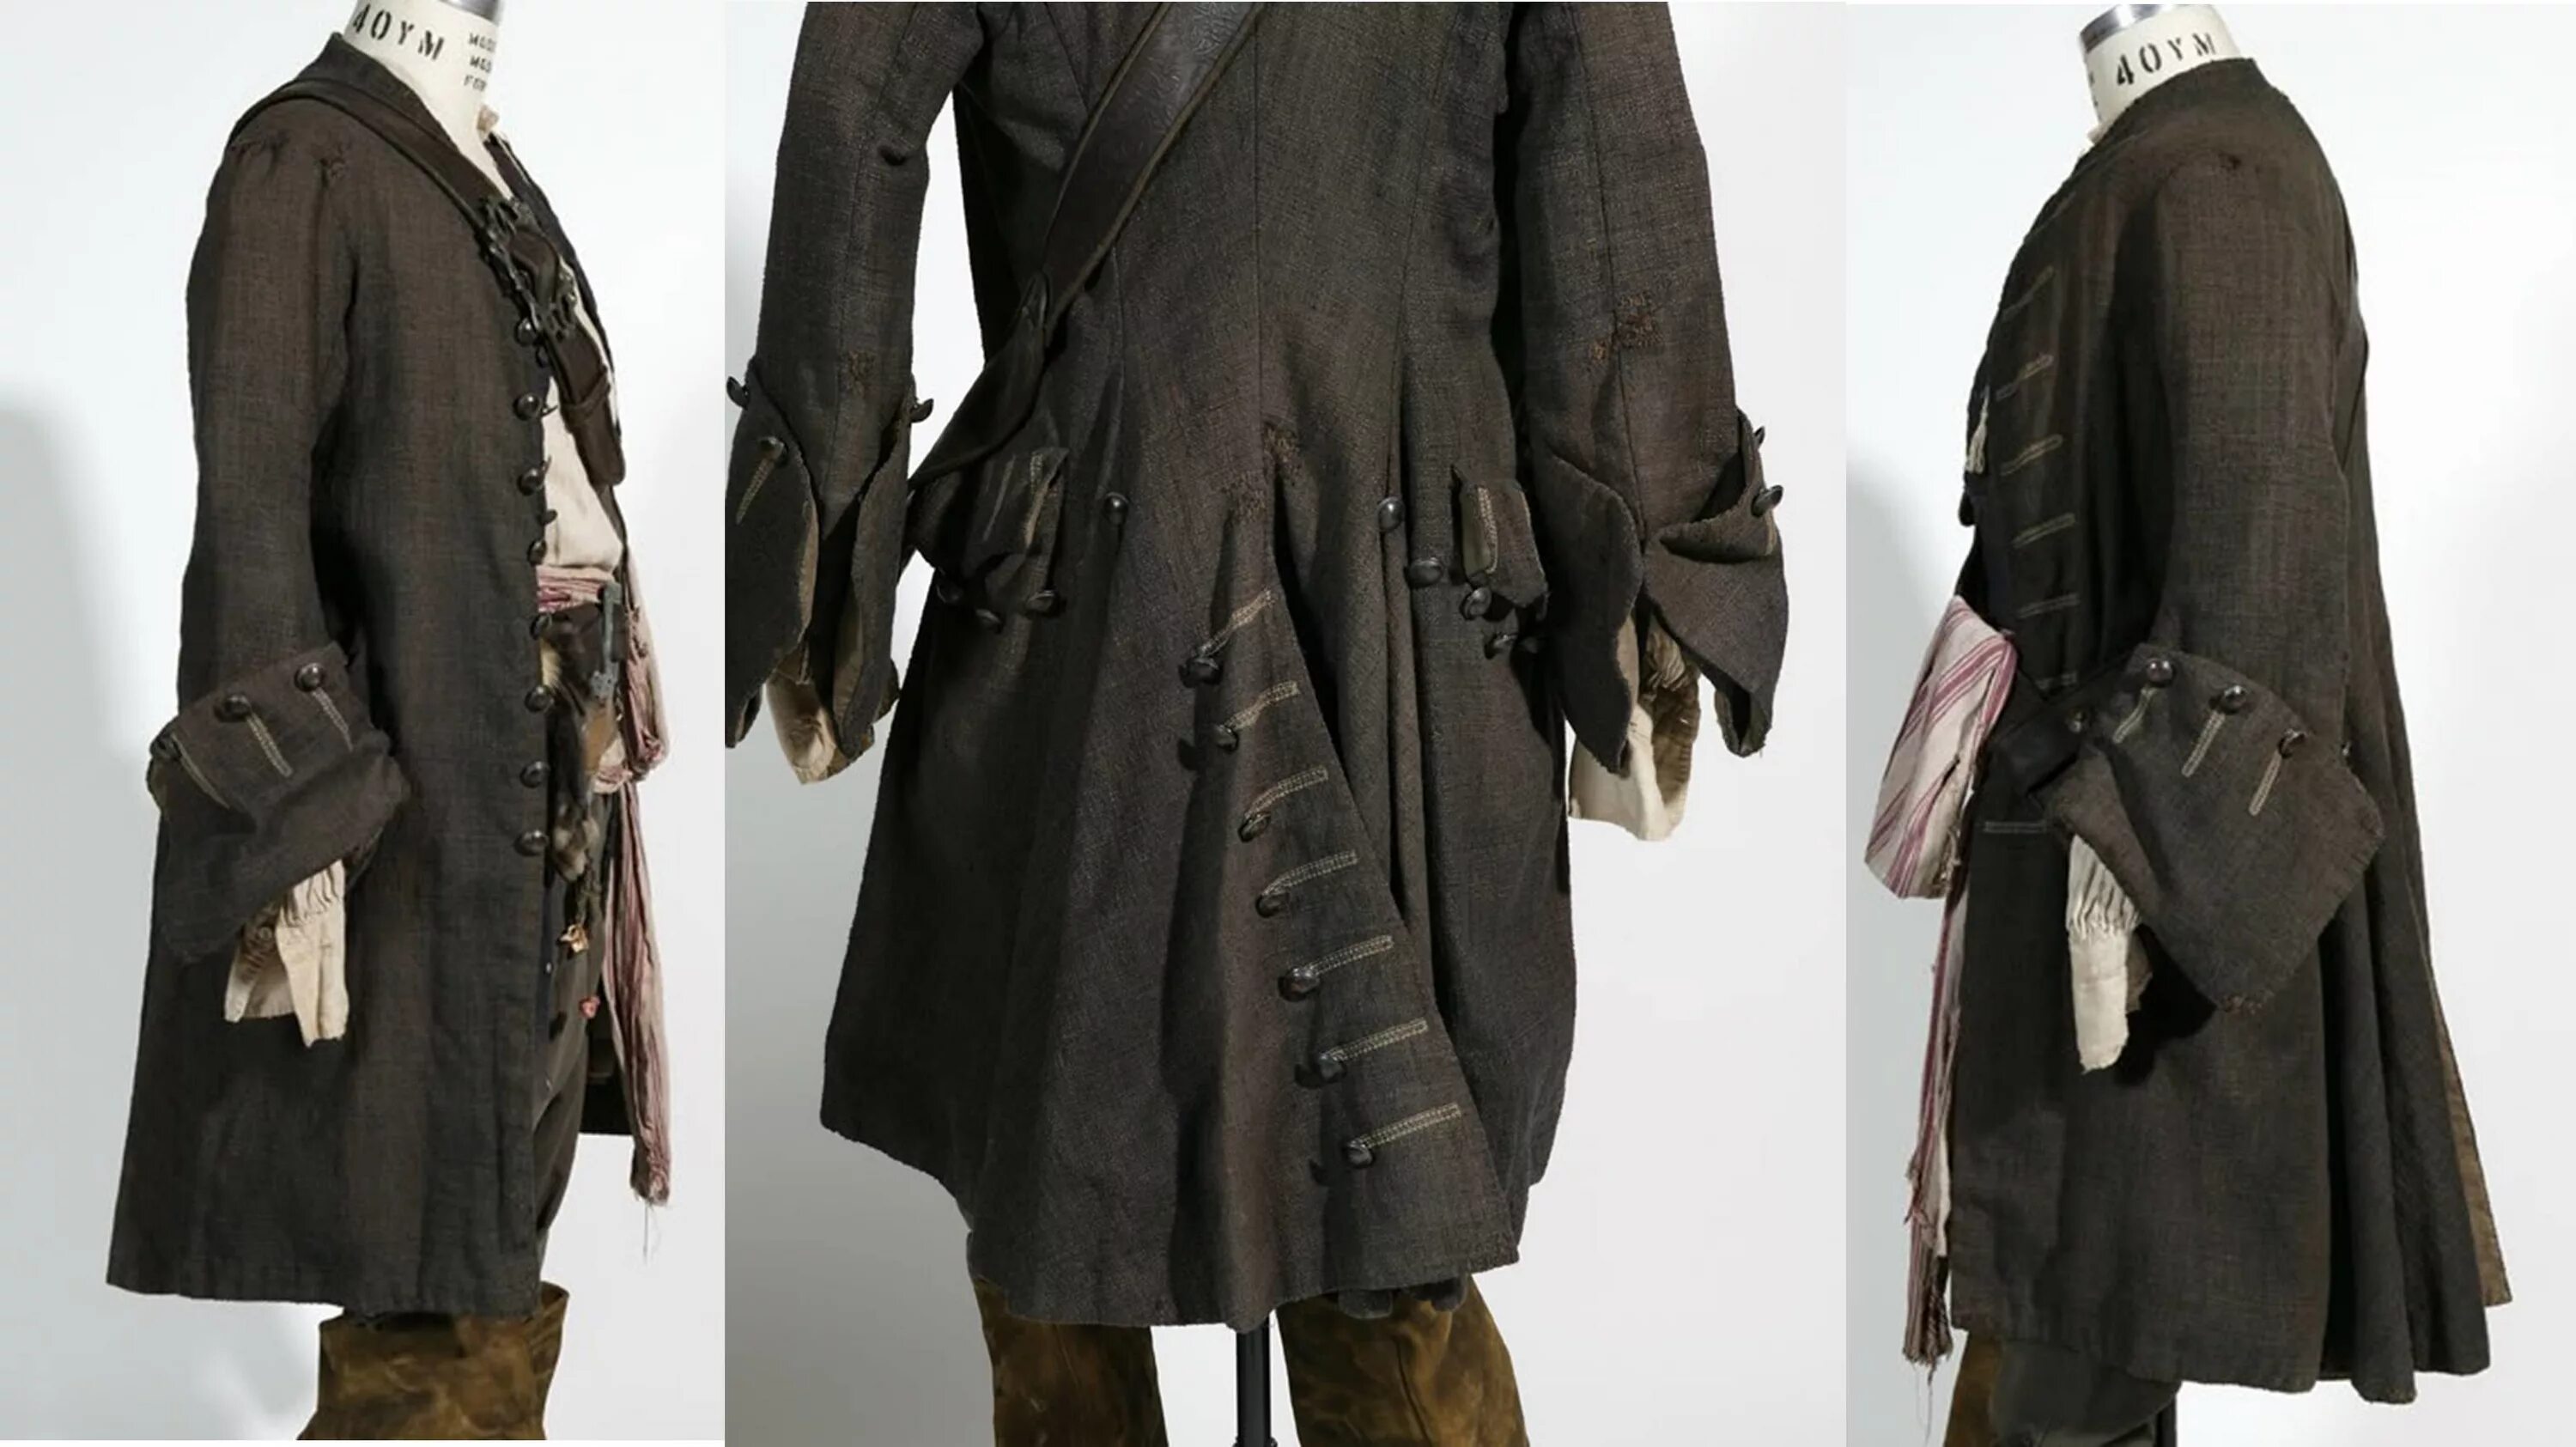 Сюртук также считался верхней одеждой. Джек Воробей камзол. Камзол пирата 17 века. Камзол 18 века пират. Джек Воробей кожаный плащ.